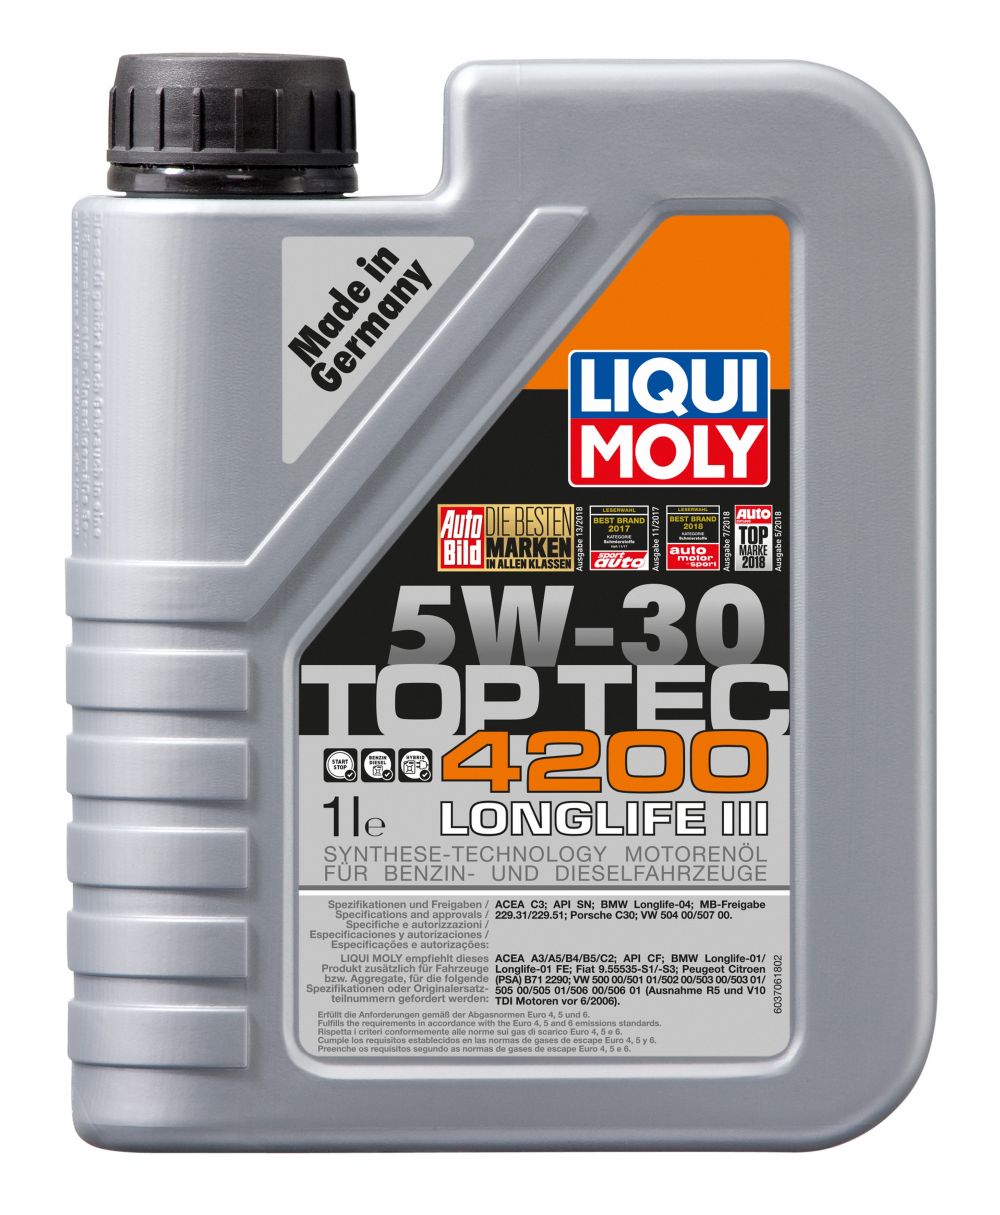 Liqui Moly Motorolje Top Tec 4200 5W-30 1 l